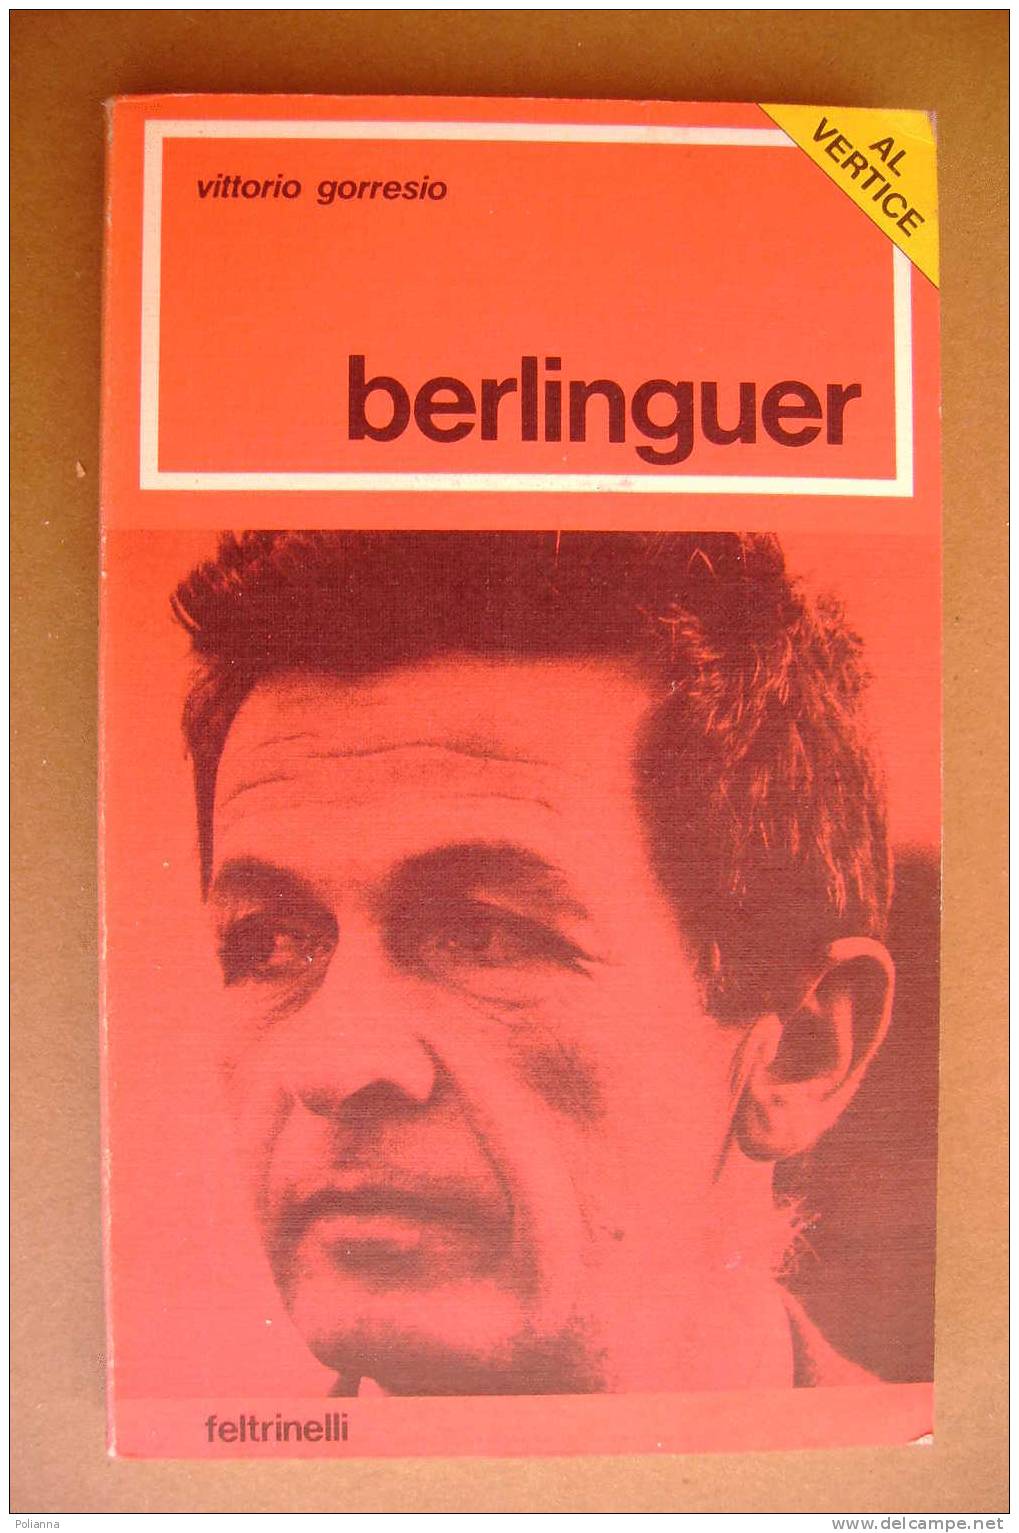 PAO/64 Vittorio Gorresi BERLINGUER Feltrinelli I Ed.1976 PCI/POLITICA - Société, Politique, économie